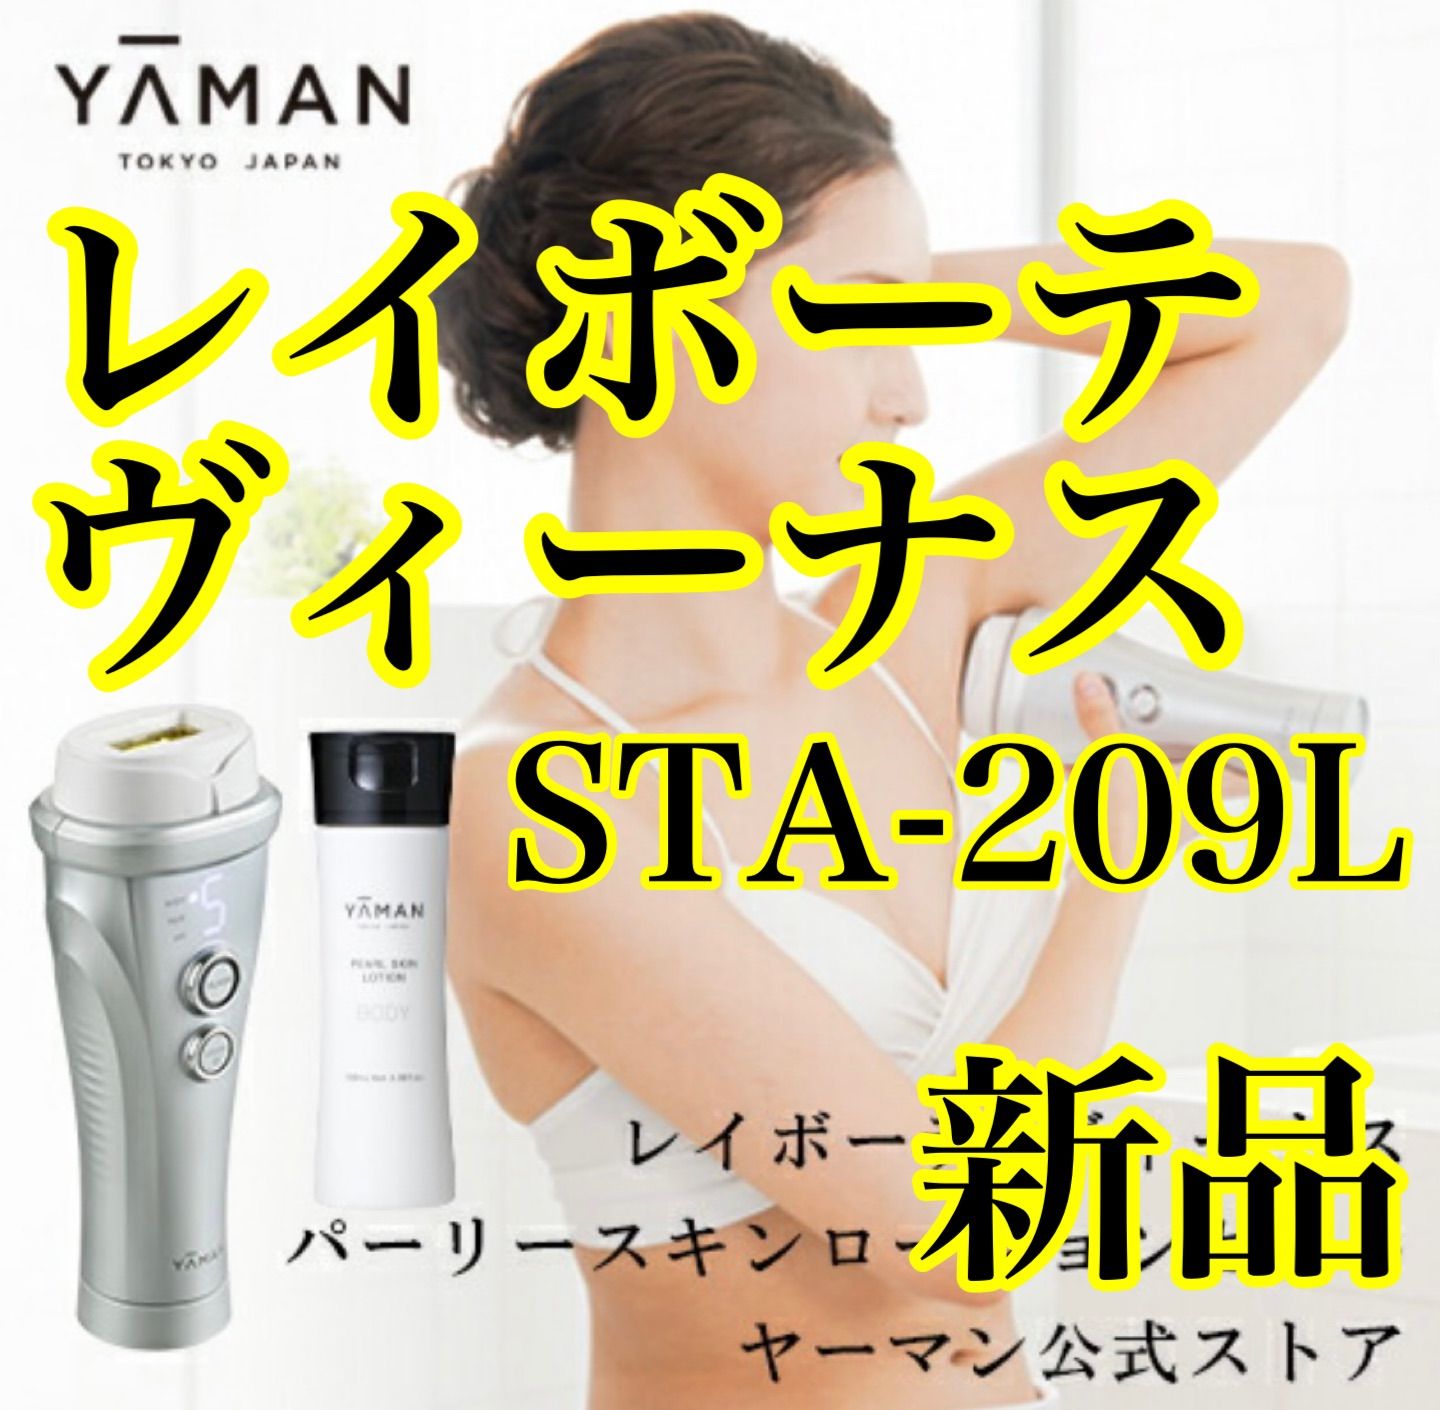 ヤーマン レイボーテ ヴィーナス STA-209L 【スキンローション付 ...